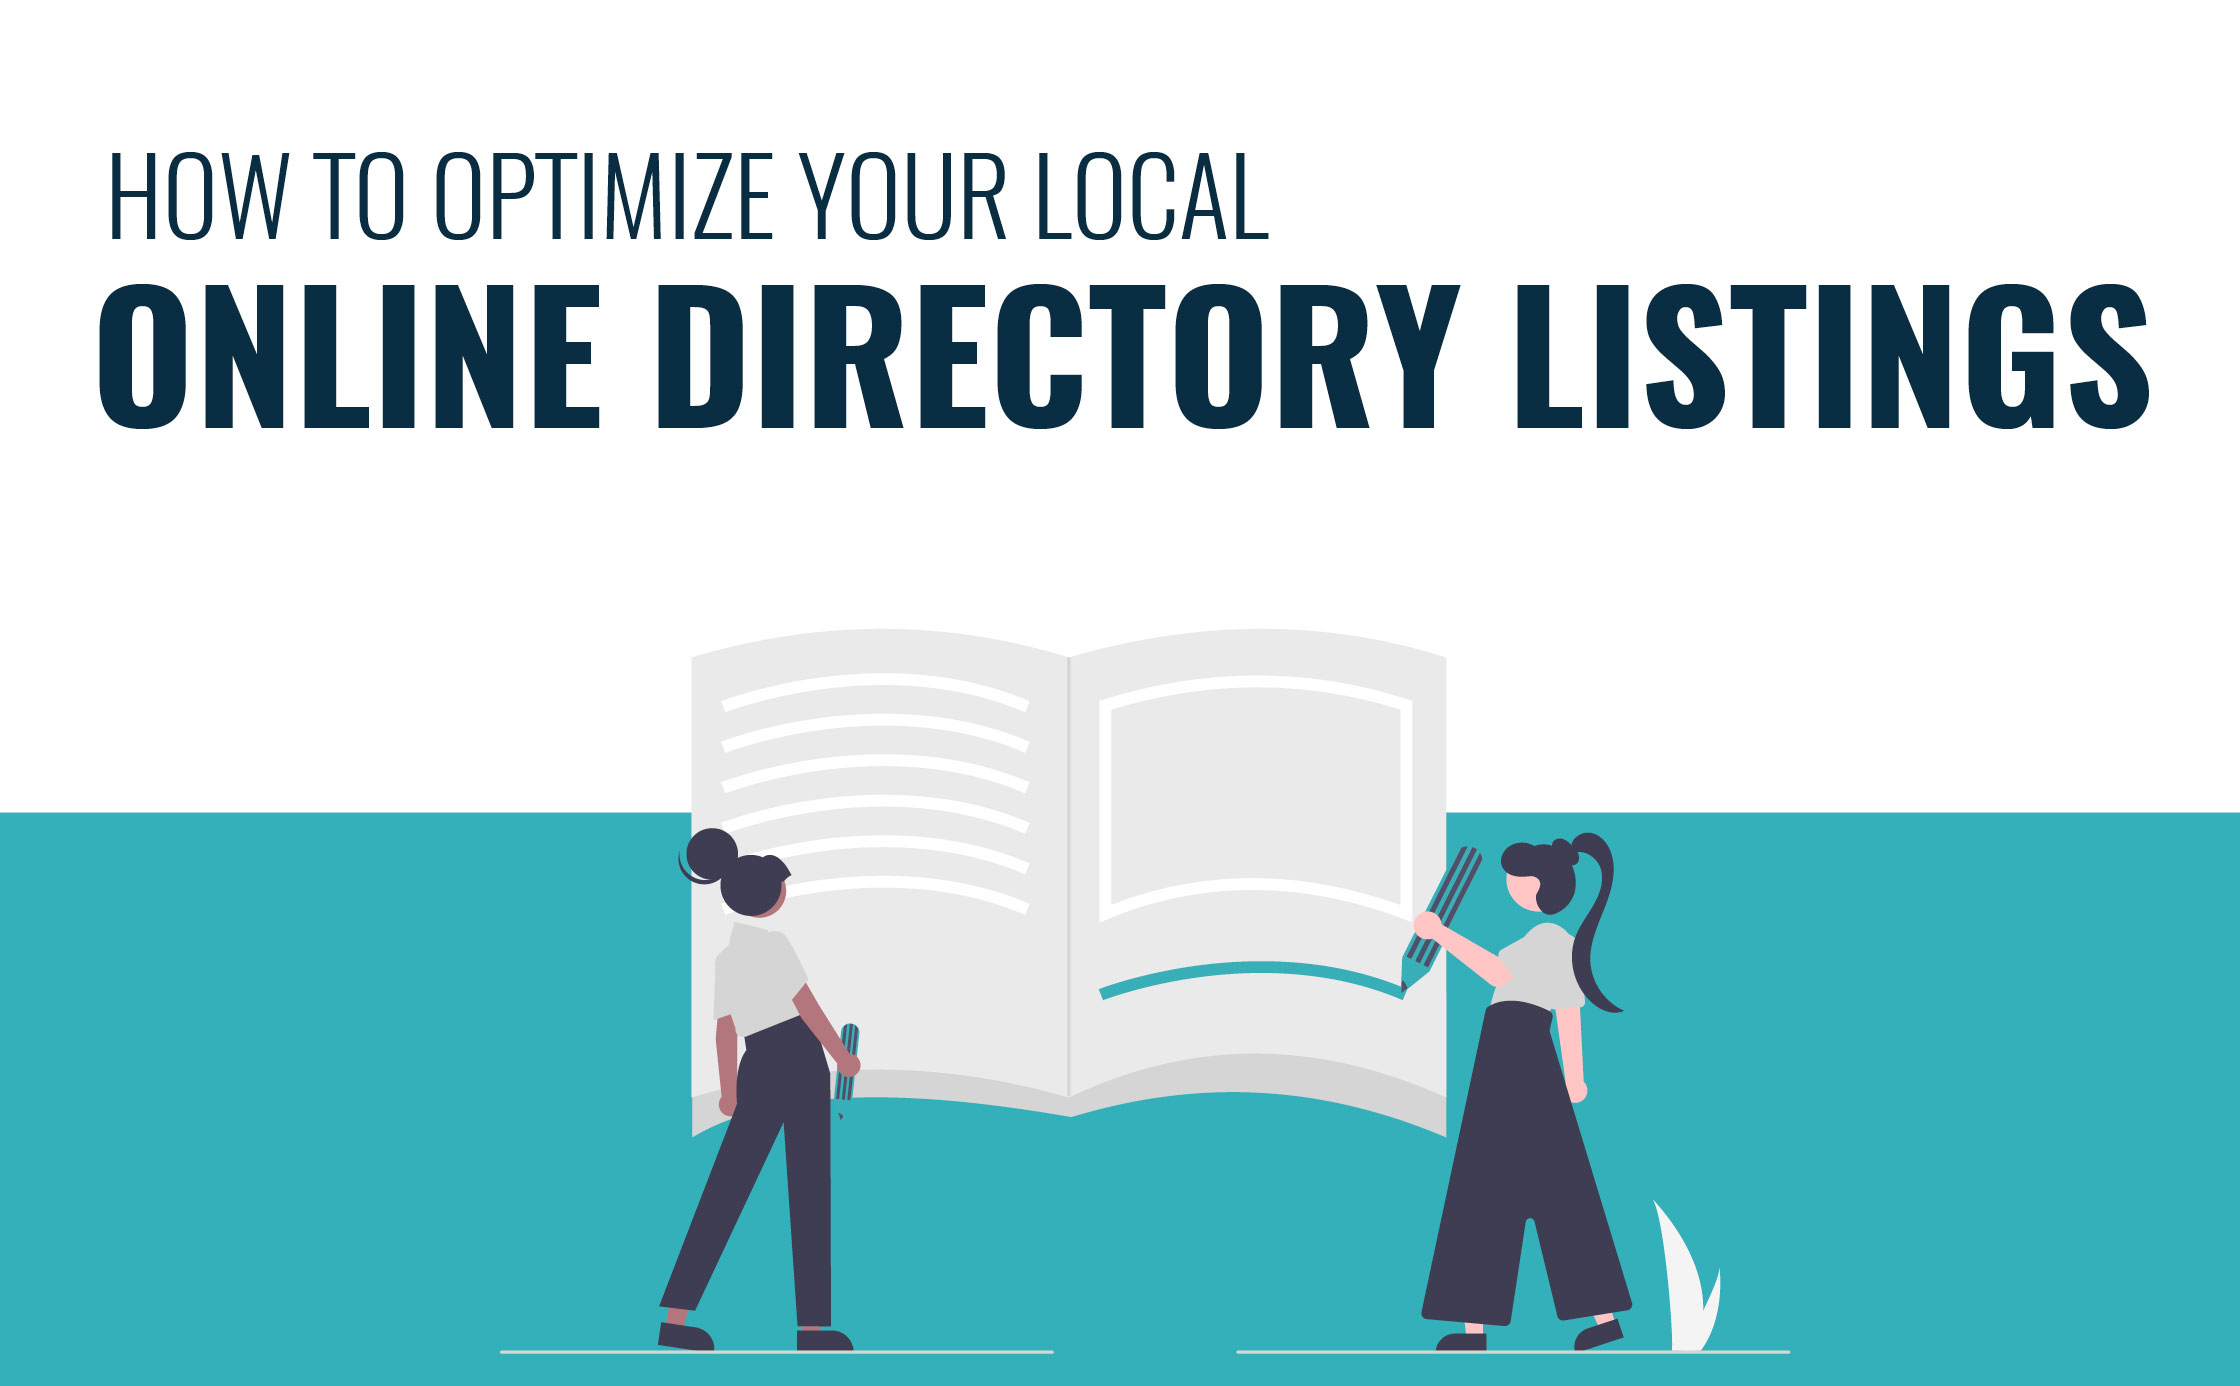 Blog - Come ottimizzare i tuoi elenchi di directory per la massima visibilità